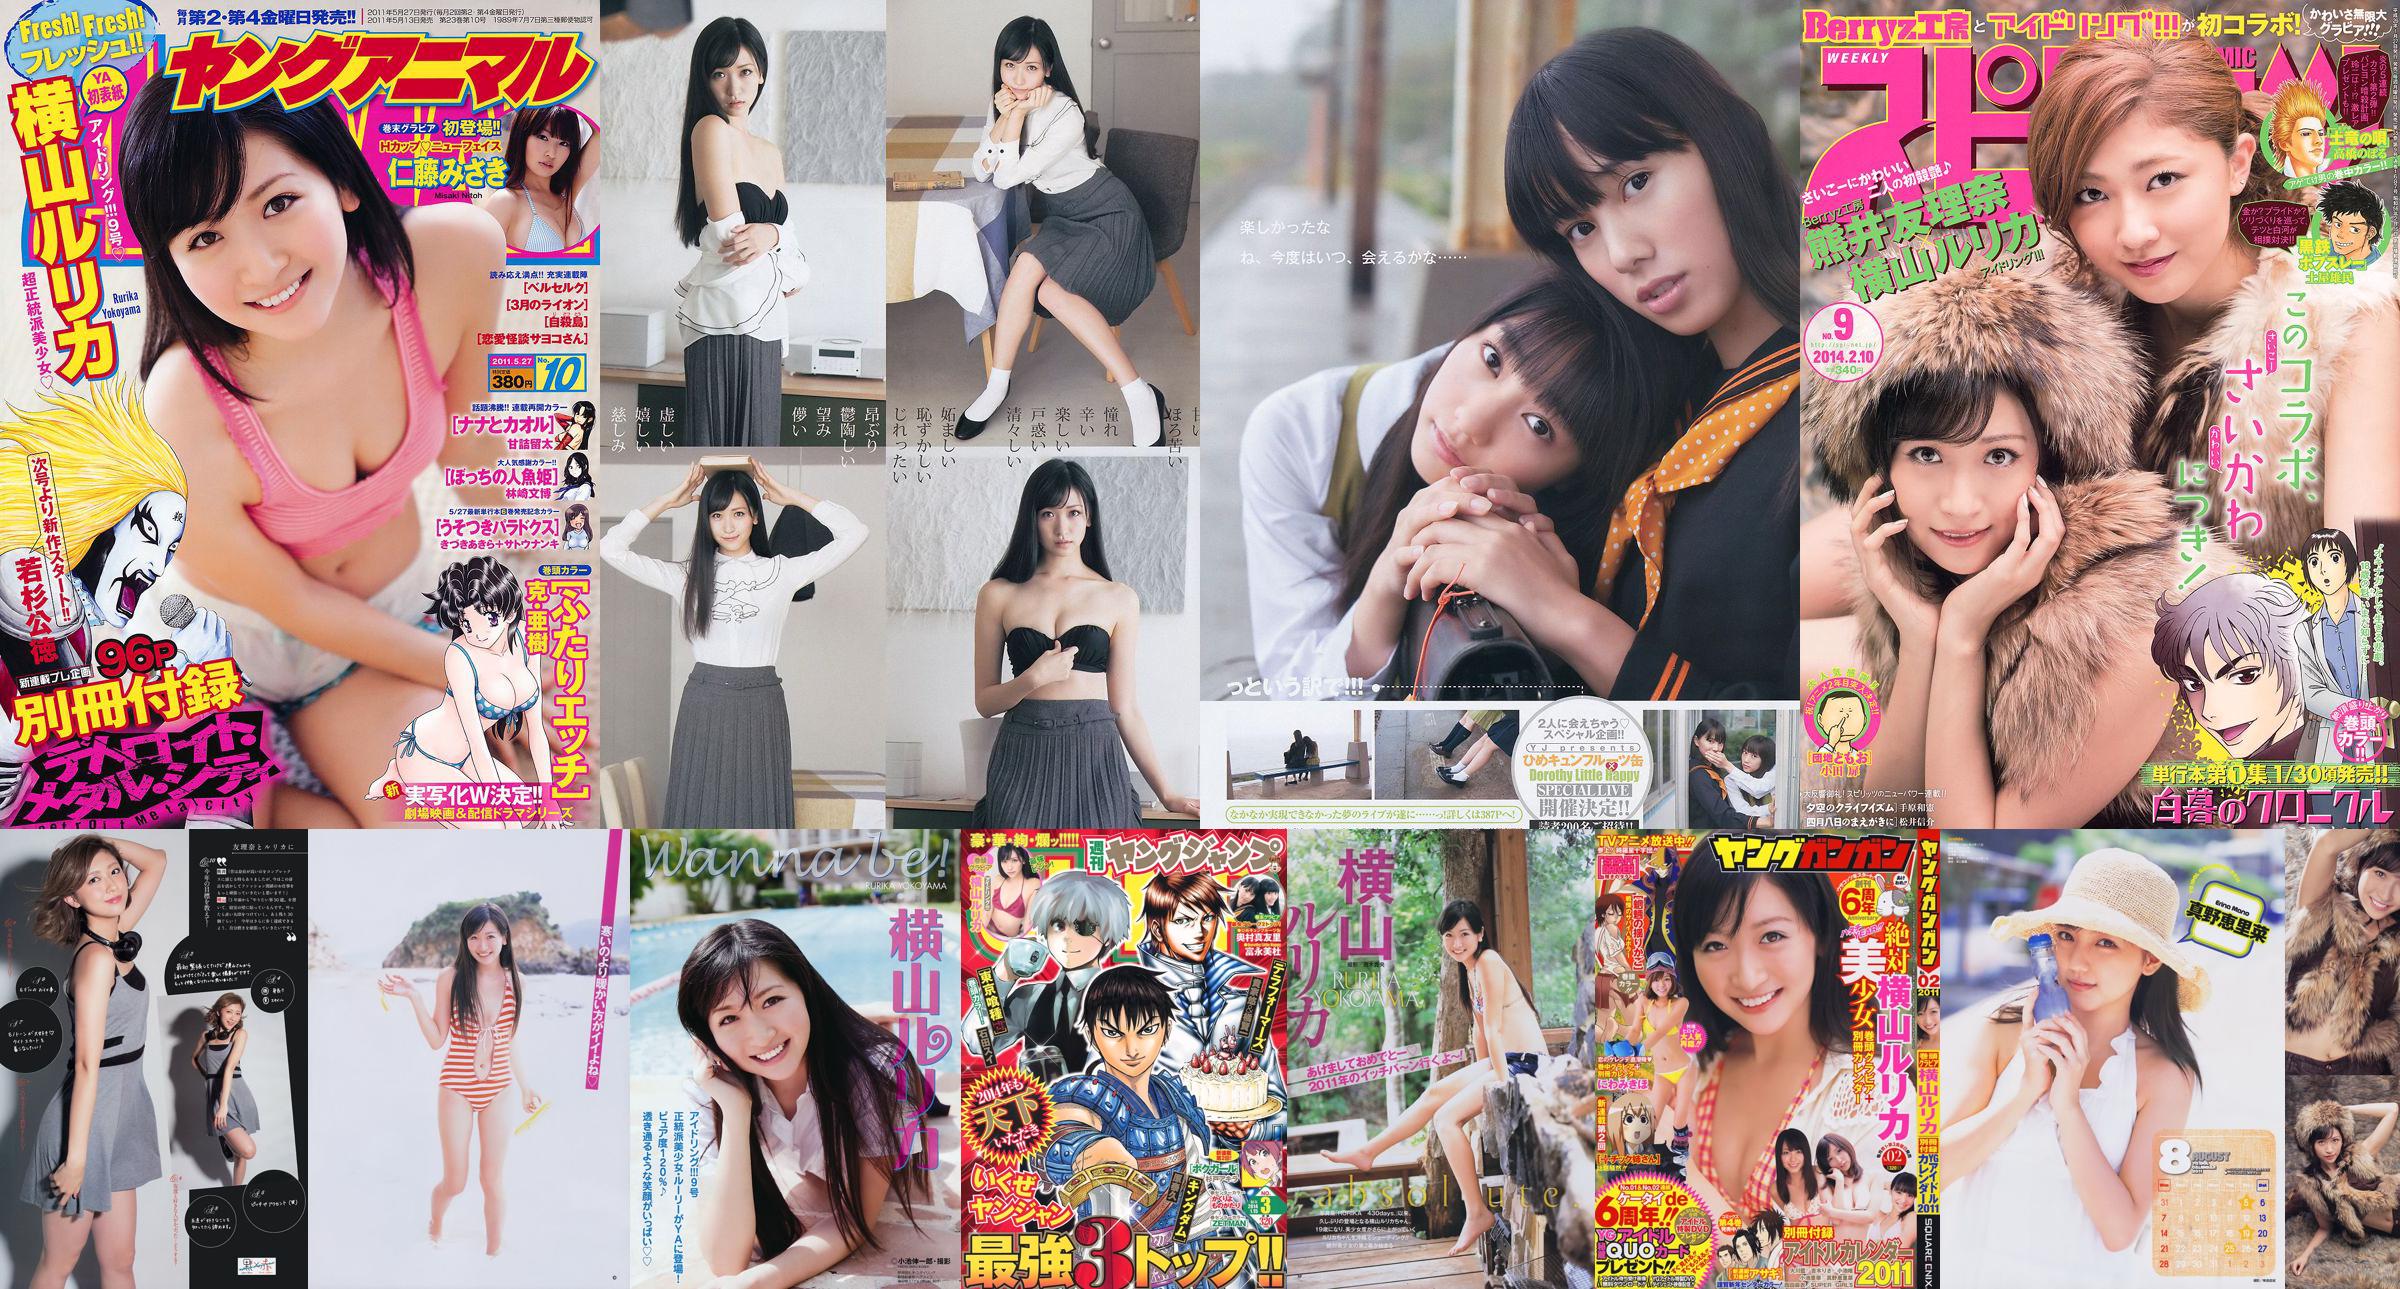 [Young Gangan] Rurika Yokoyama 2011 No.02 Photo Magazine No.8e951d Pagina 6